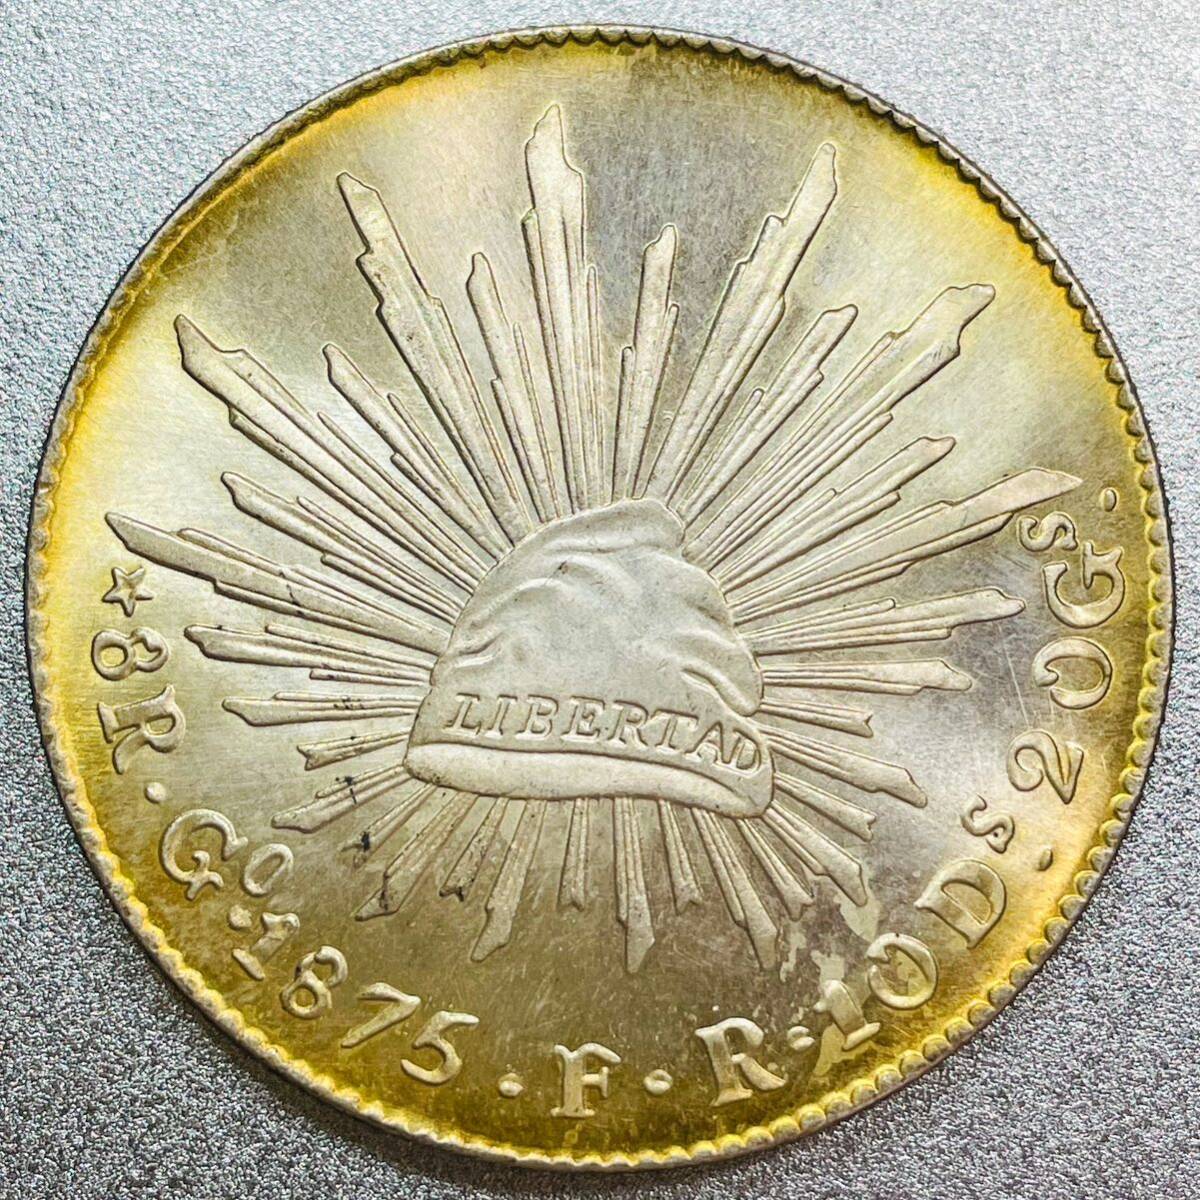  Mexico серебряная монета 8 Real серебряная монета цветный многоцветный копия монета 